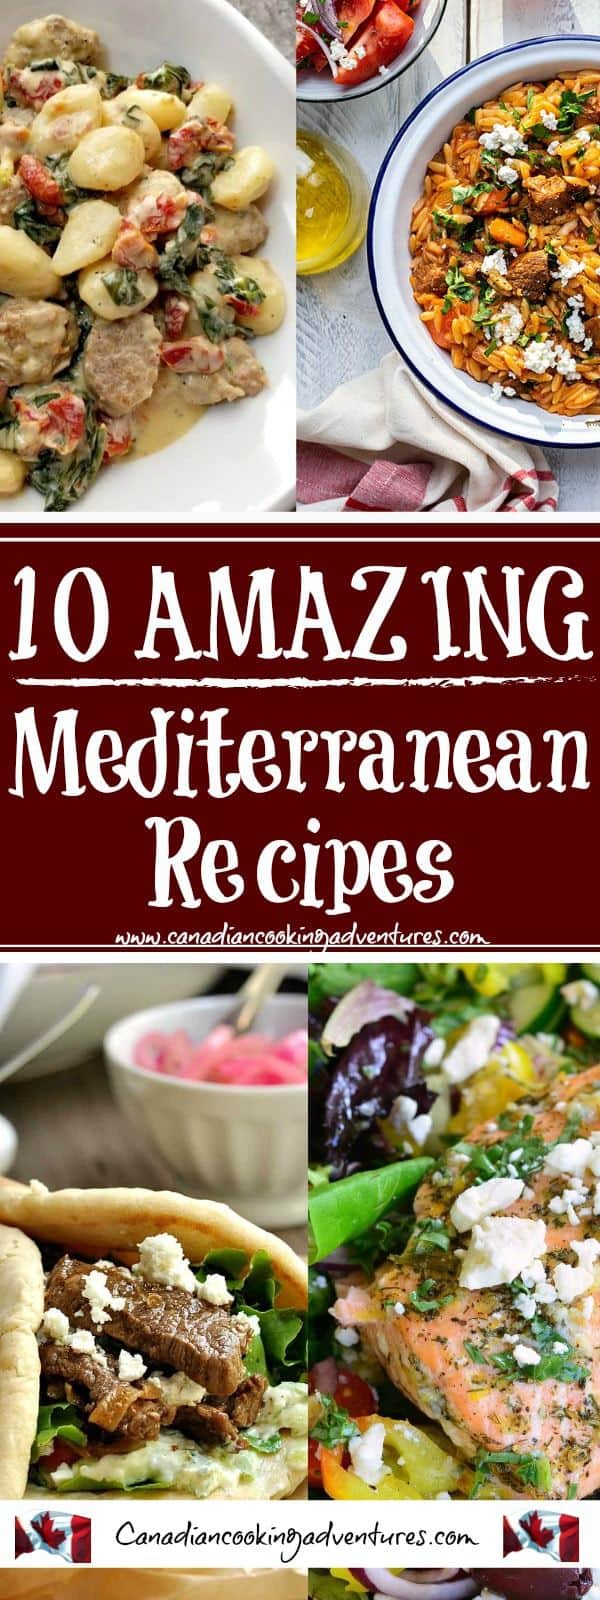 Best Mediterranean Recipes